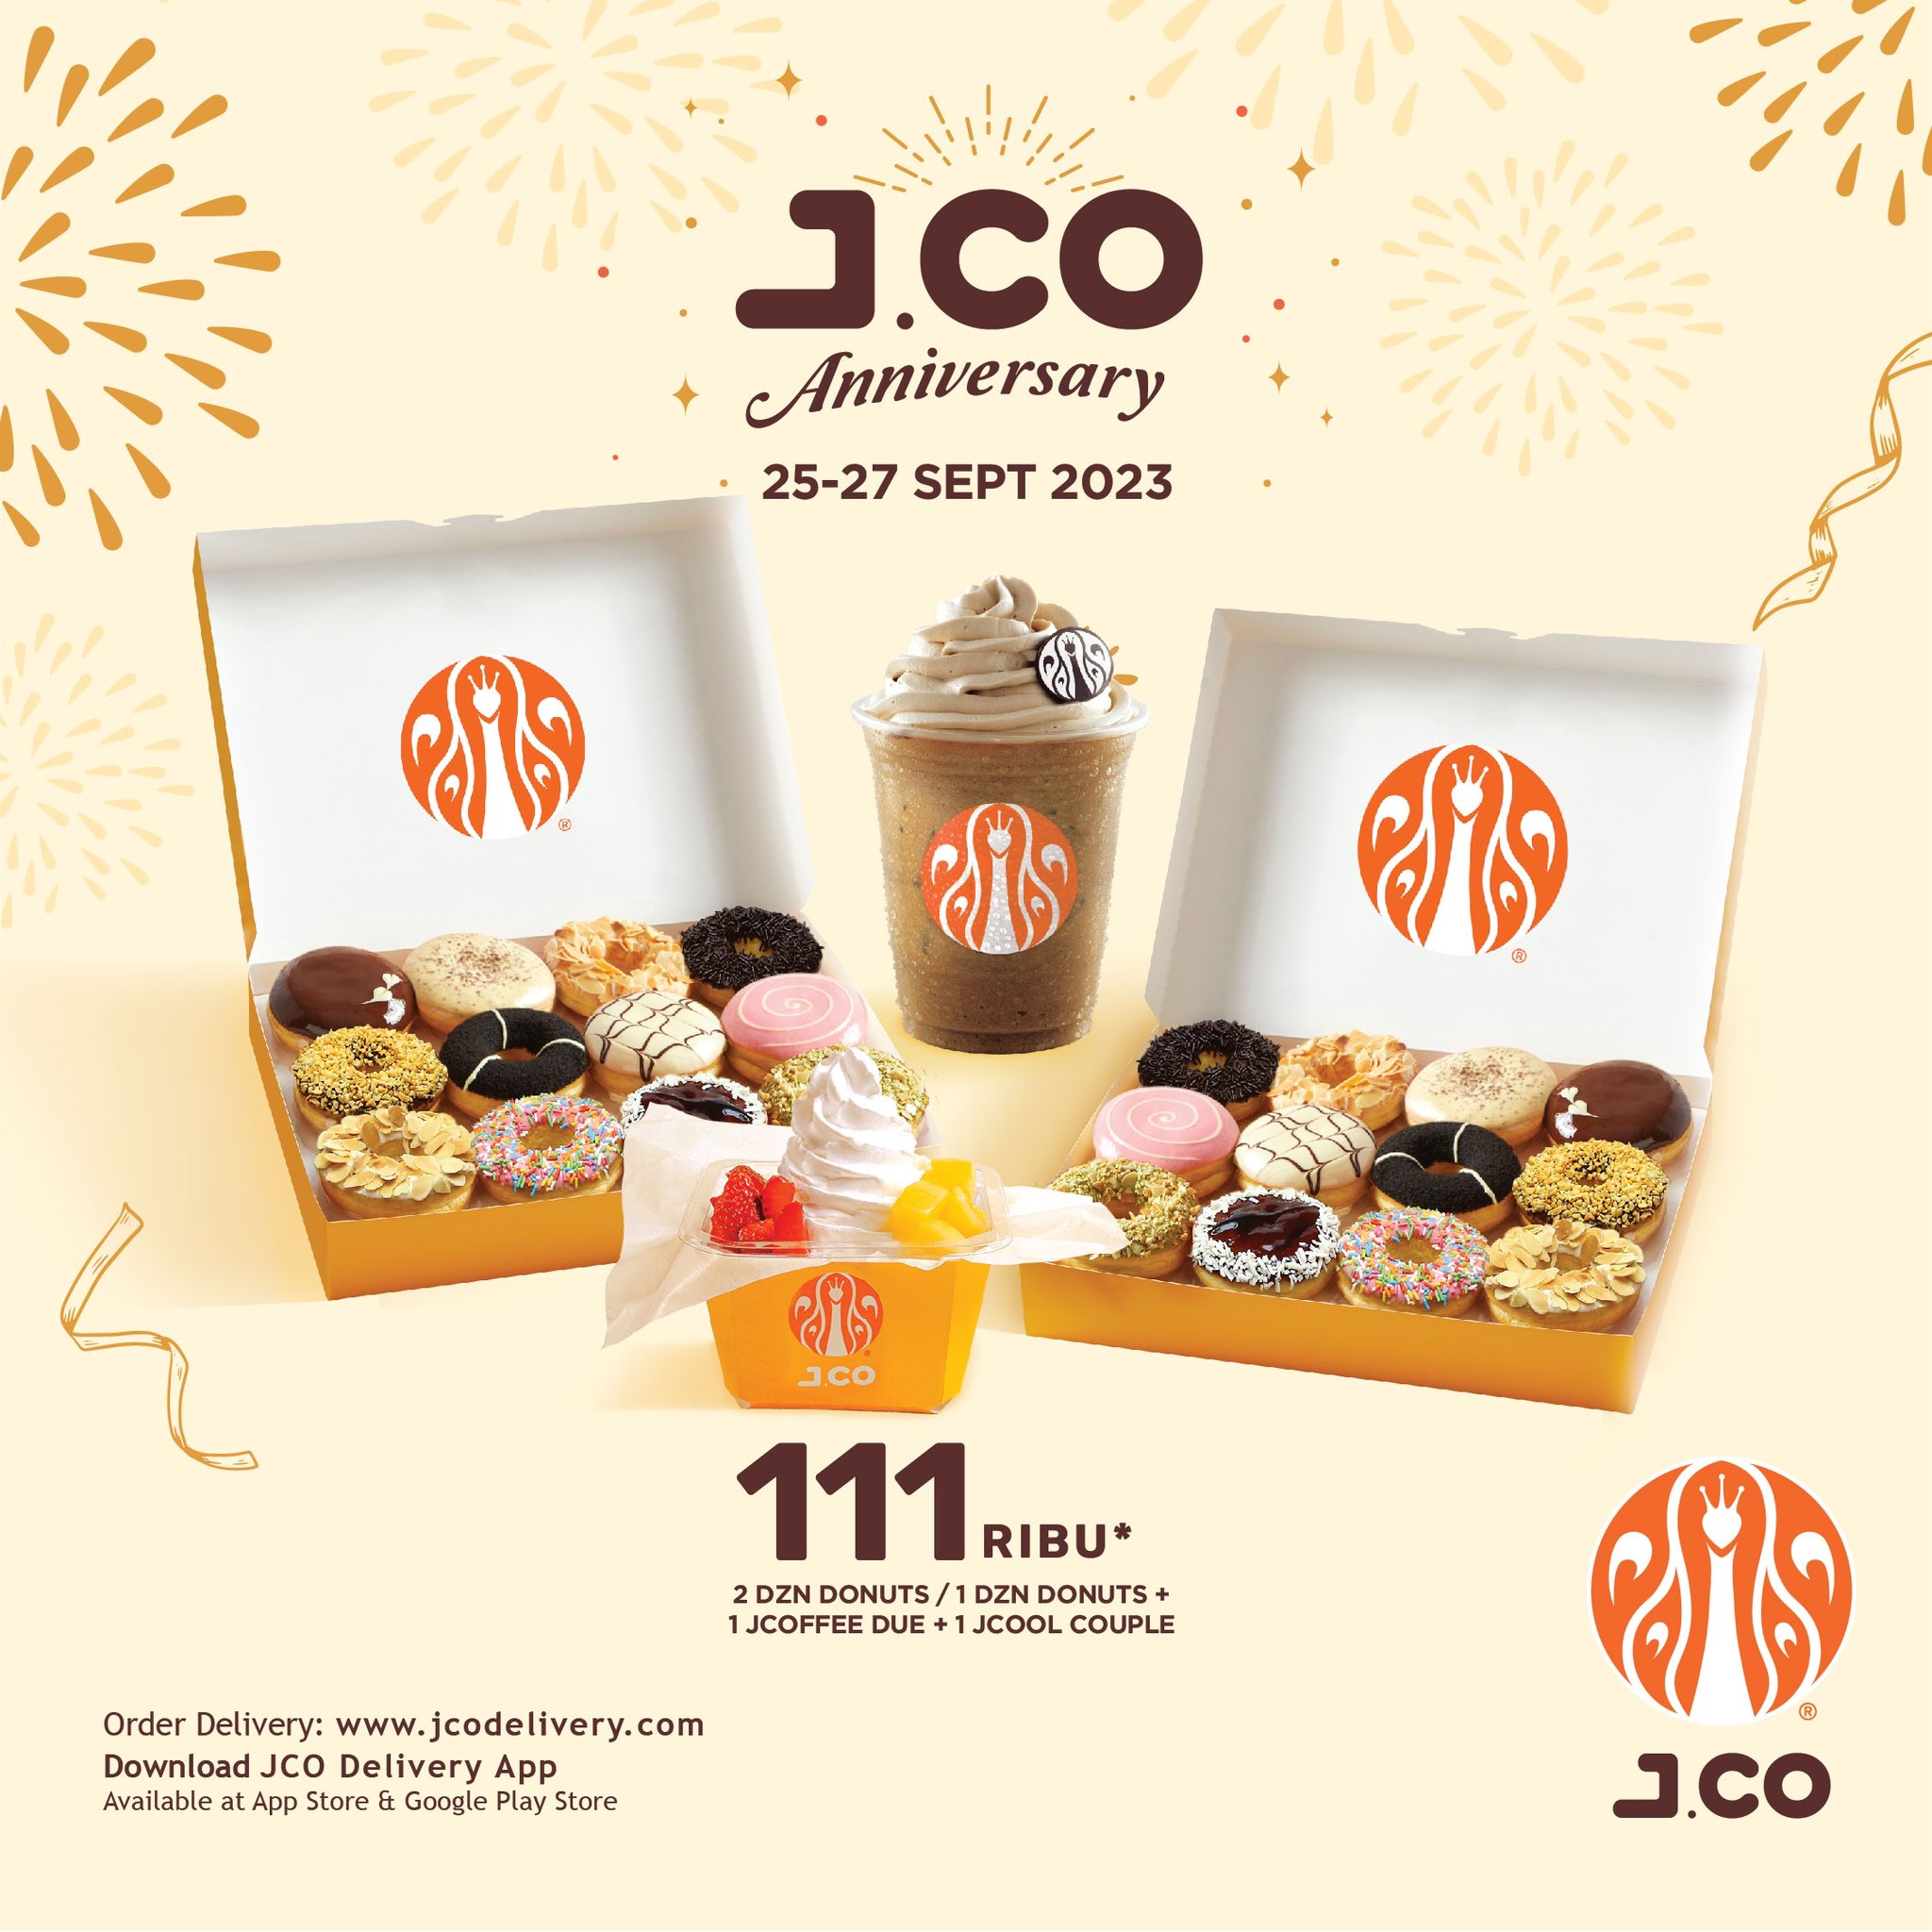 Cara Dapat Promo JCO Anniversary 25-27 September Rp111.000, Mumpung Masih Ada Waktu!